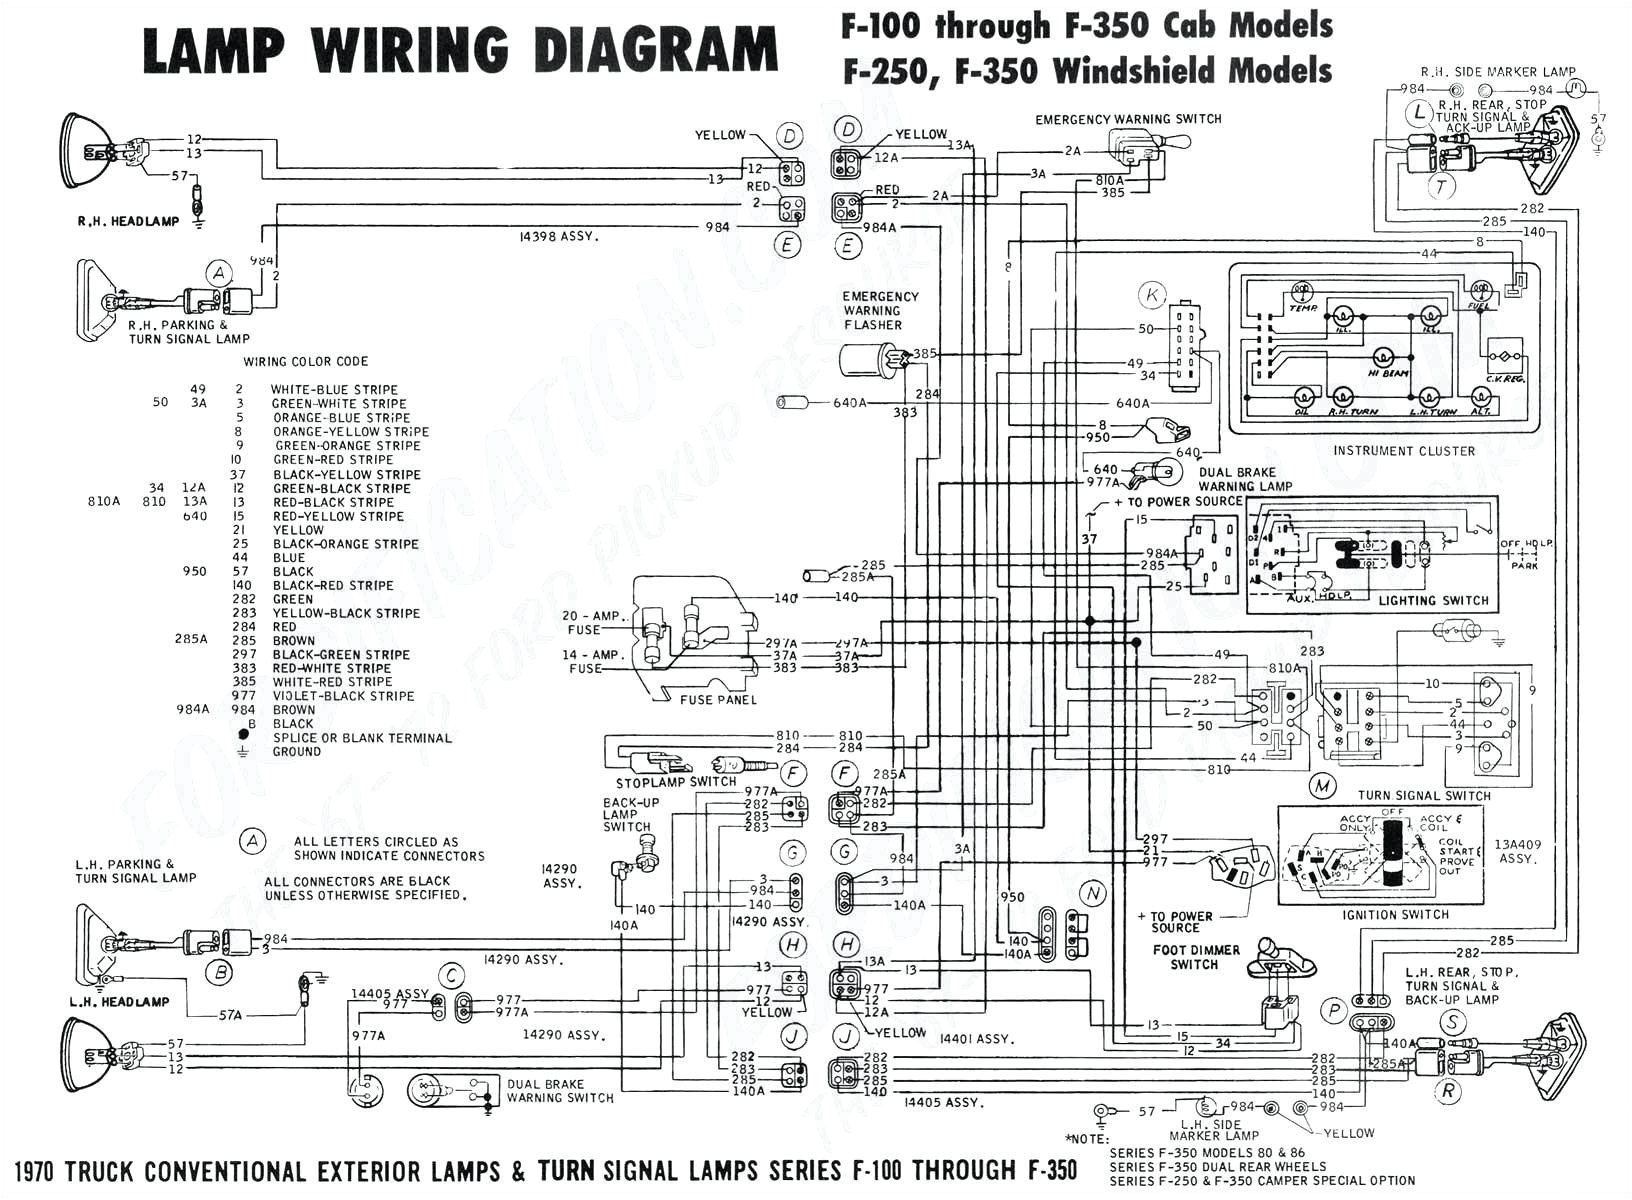 2000 kia sportage engine diagram wiring diagram today 2007 kia rio engine diagram